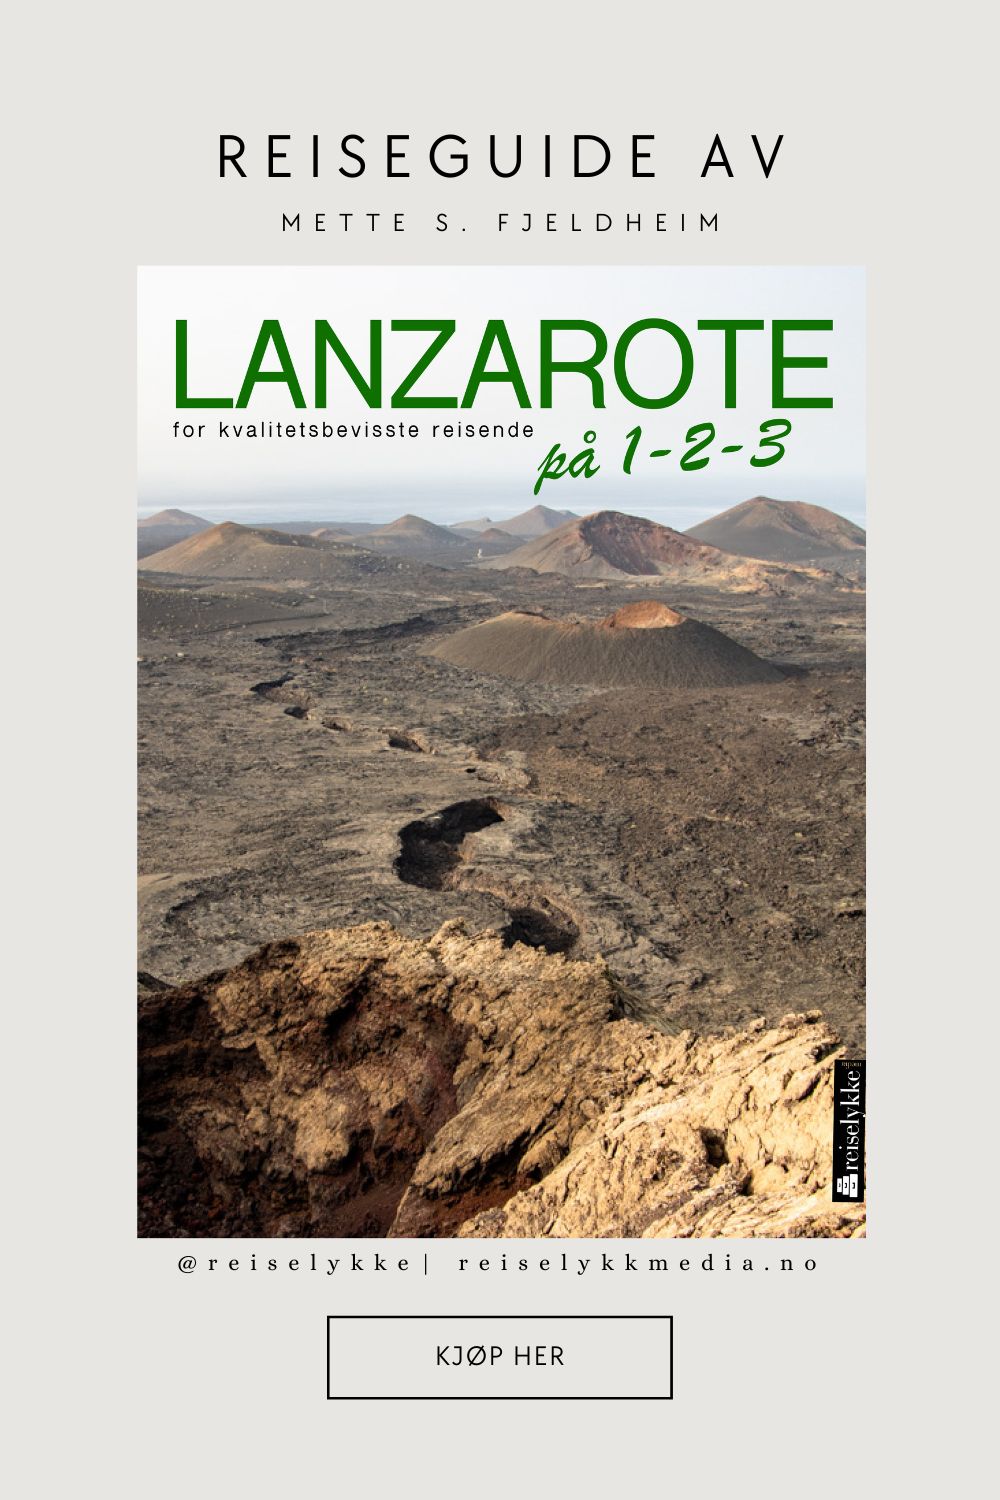 Lanzarote guide